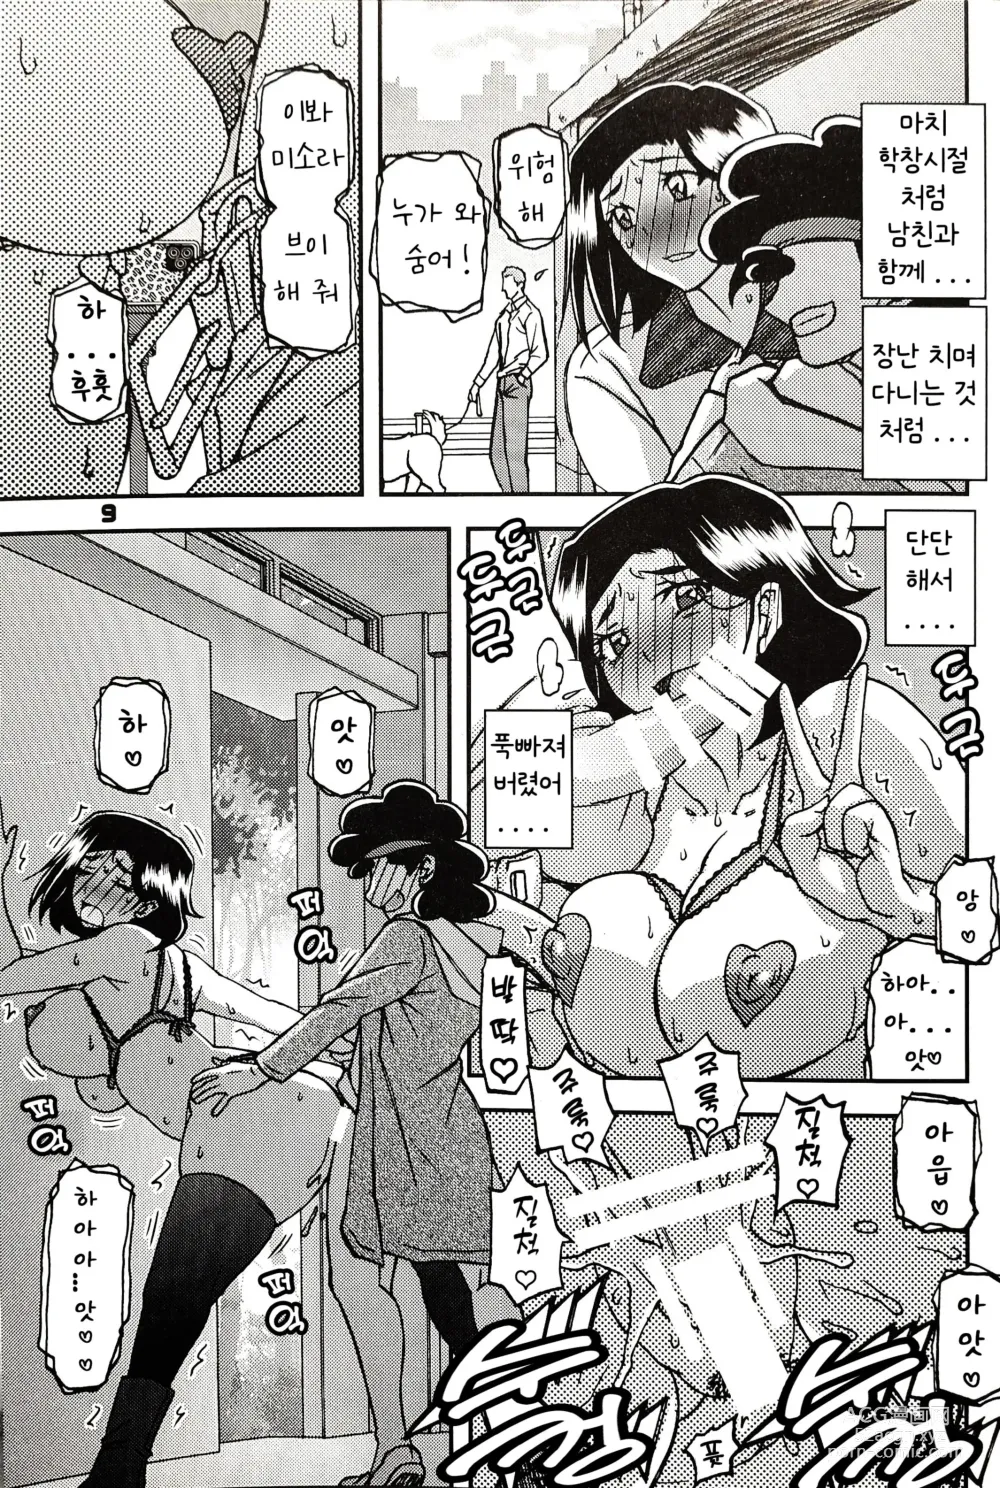 Page 8 of doujinshi Akebi no Mi - Misora AFTER